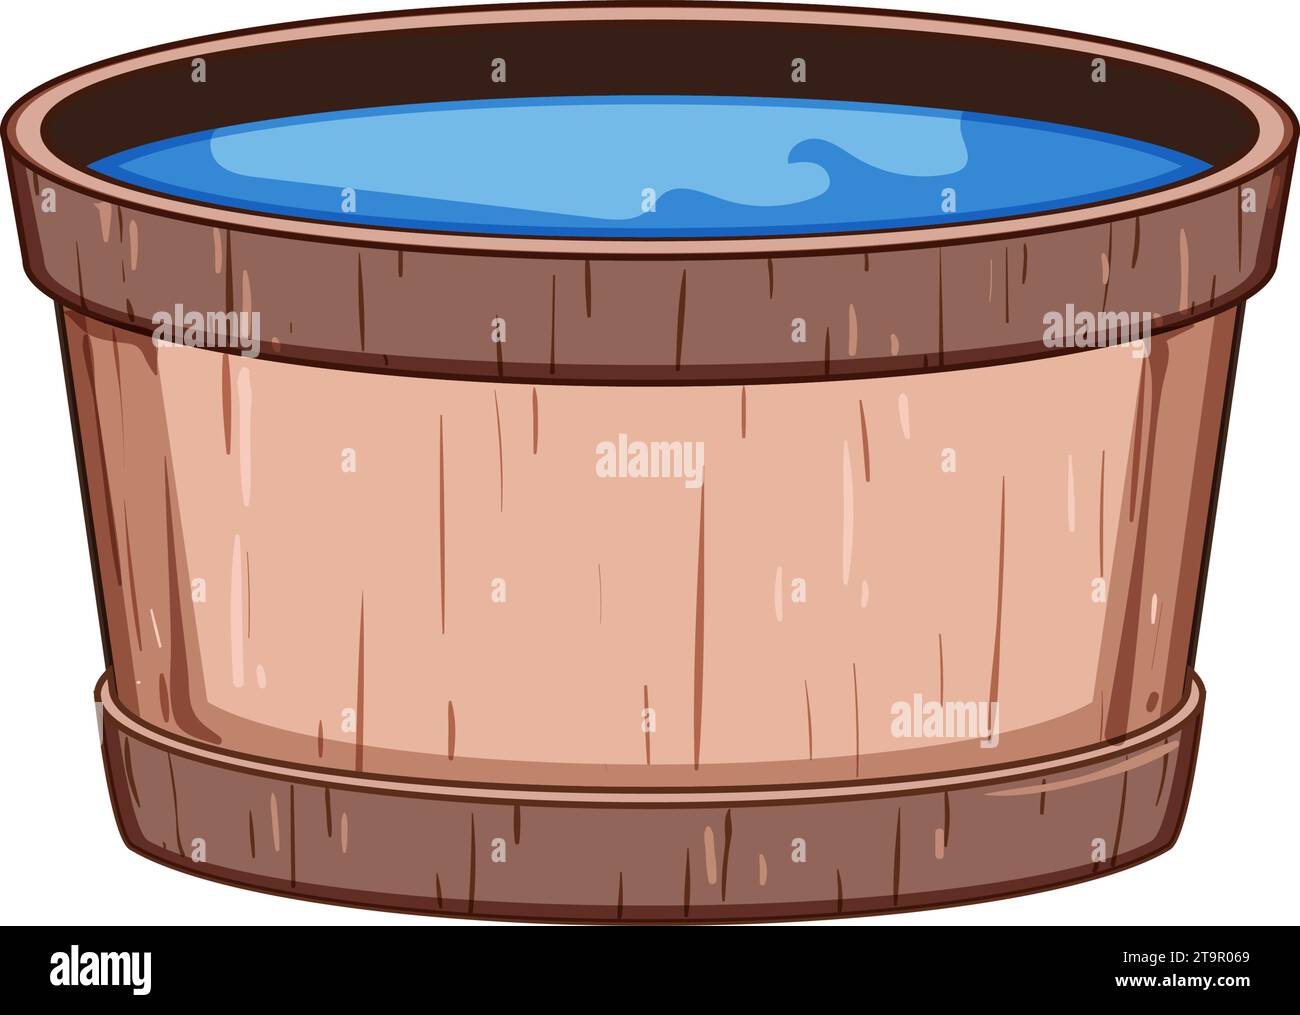 spa wooden tub cartoon vector illustration Stock Vector